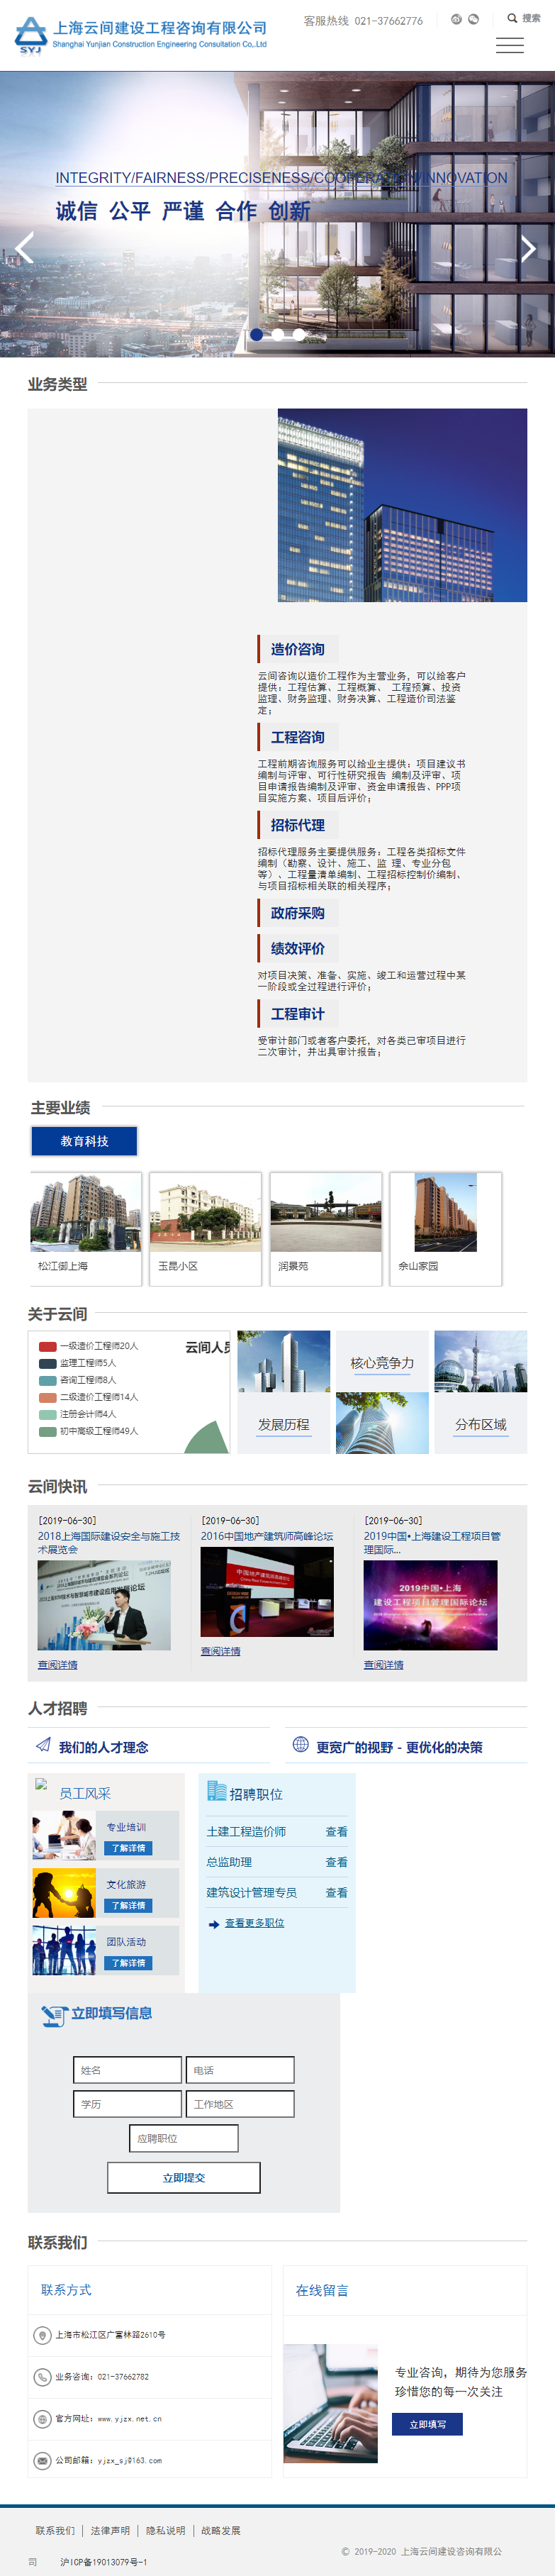 上海云间建设工程咨询有限公司网站案例